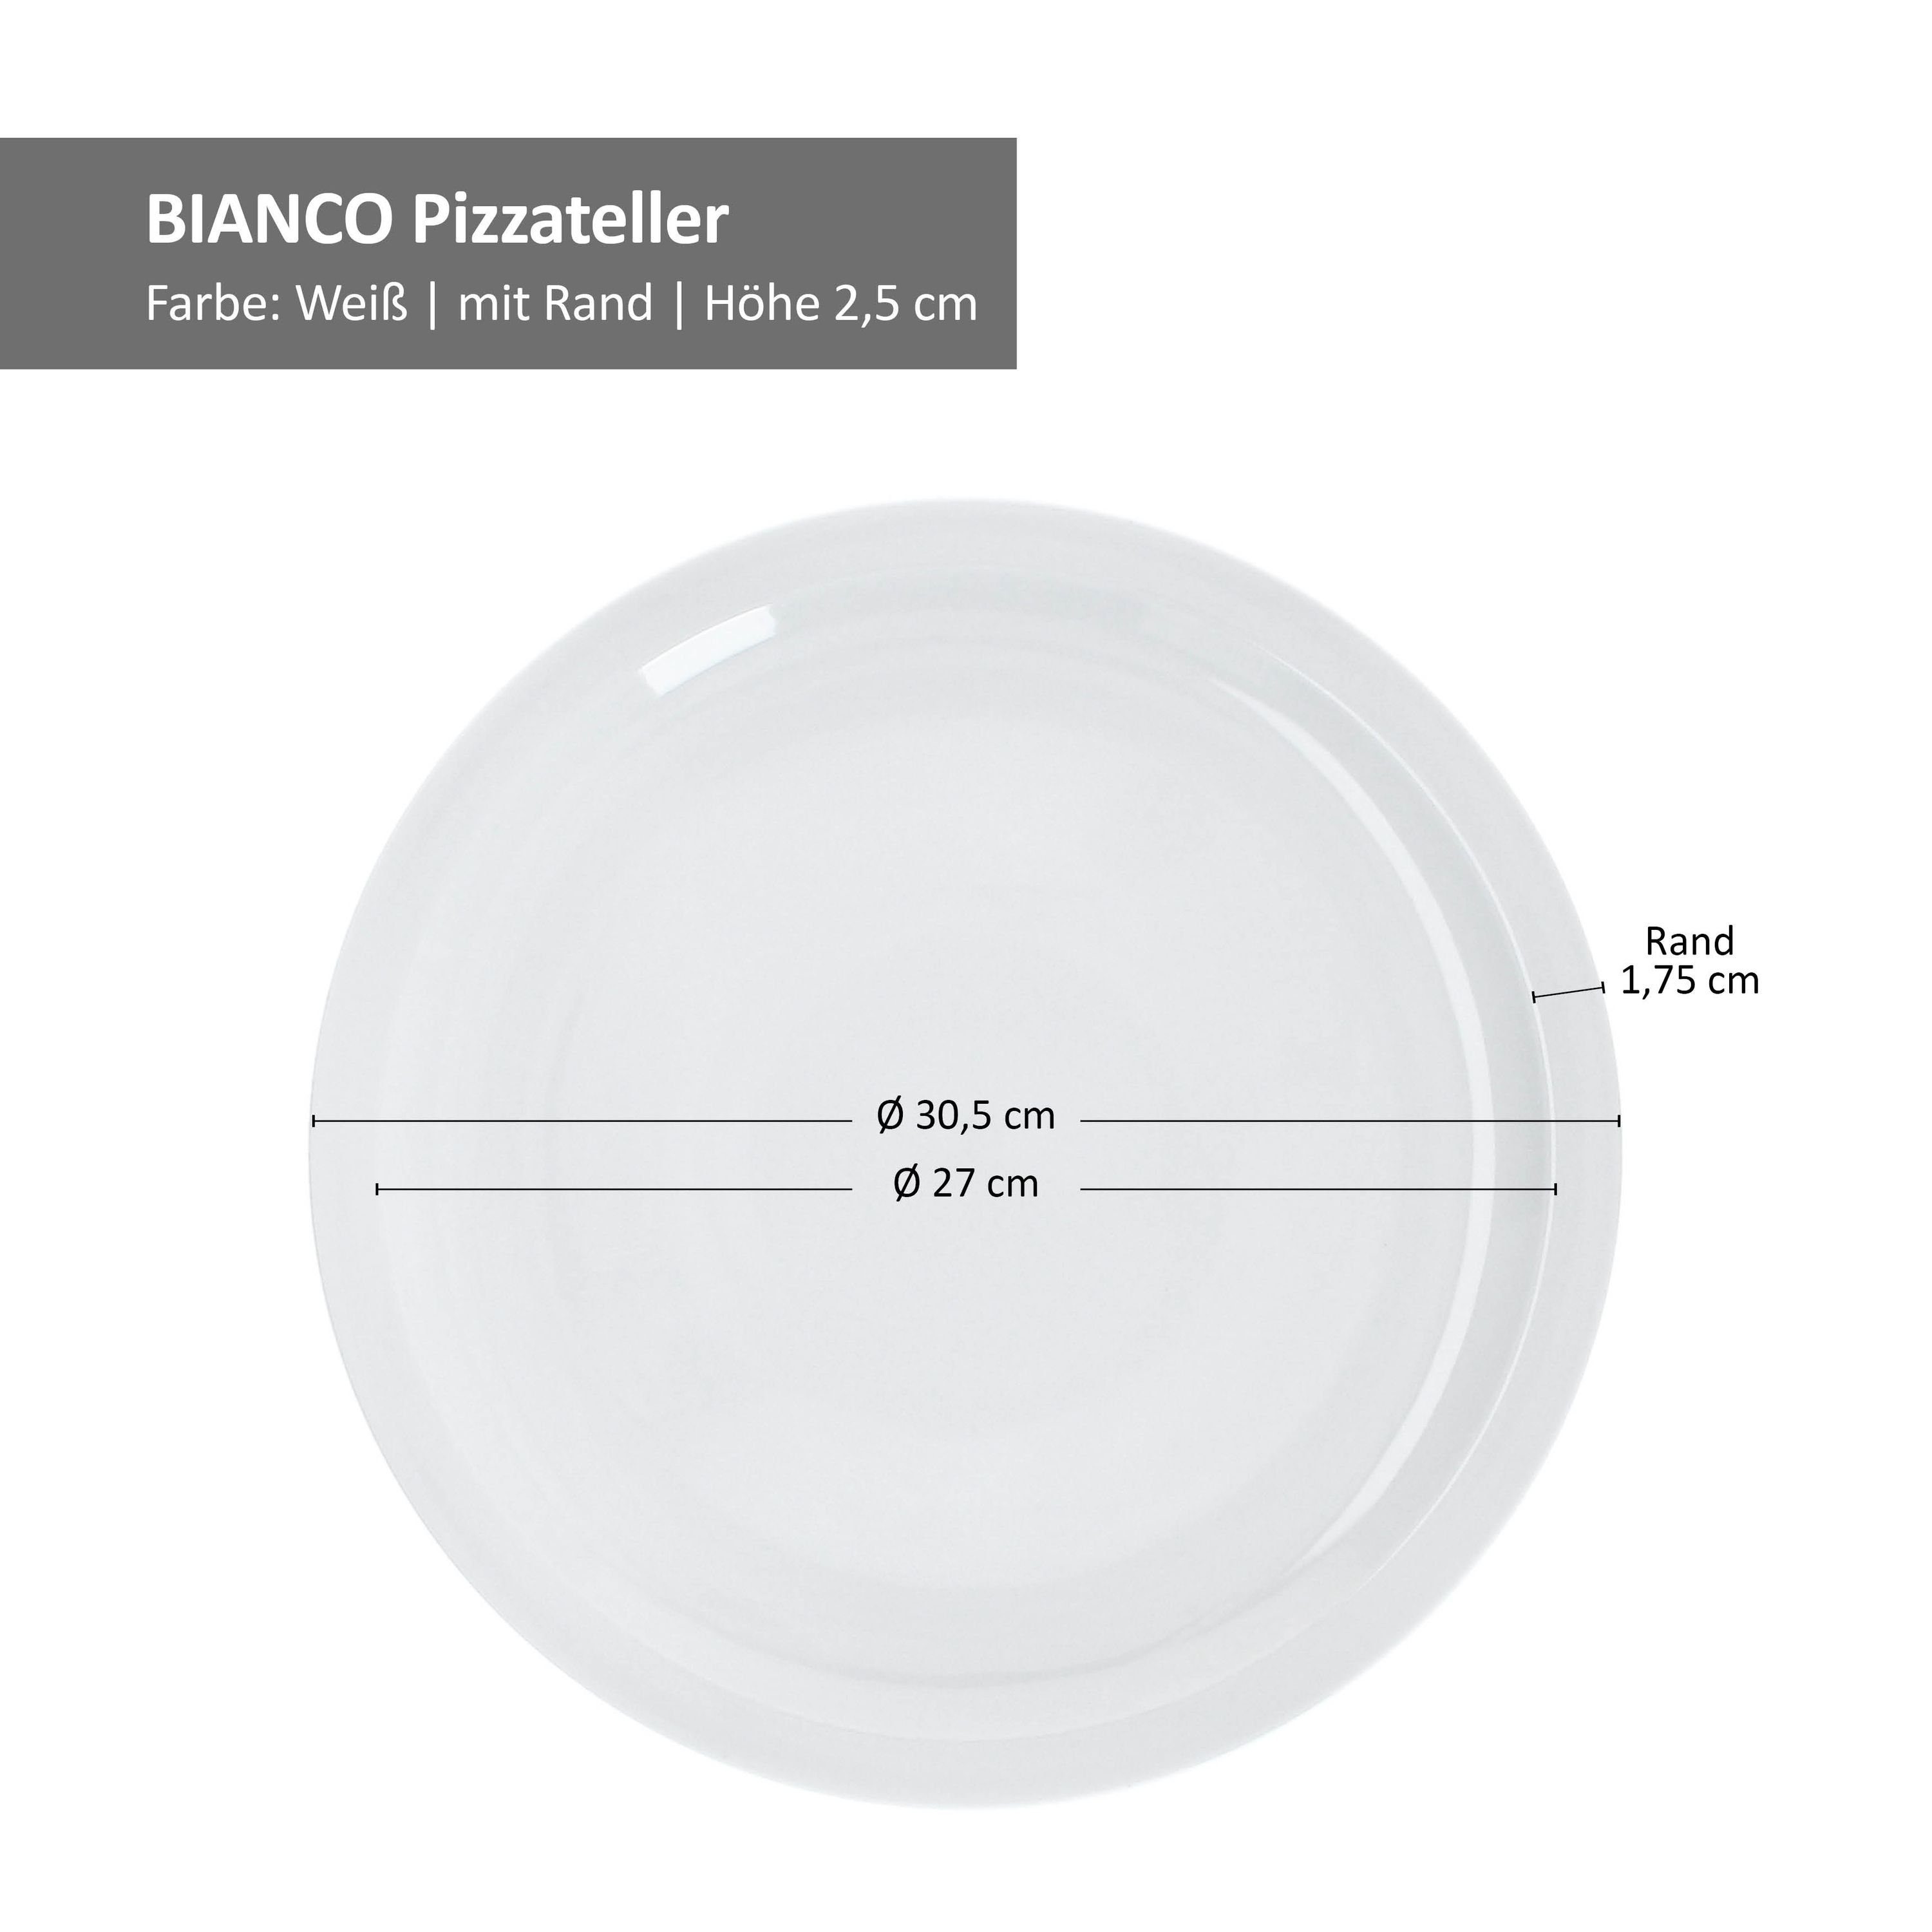 XL-Teller große 6er Ø30,5cm Set weiße Platte Pizzateller Pizzateller MamboCat Bianco